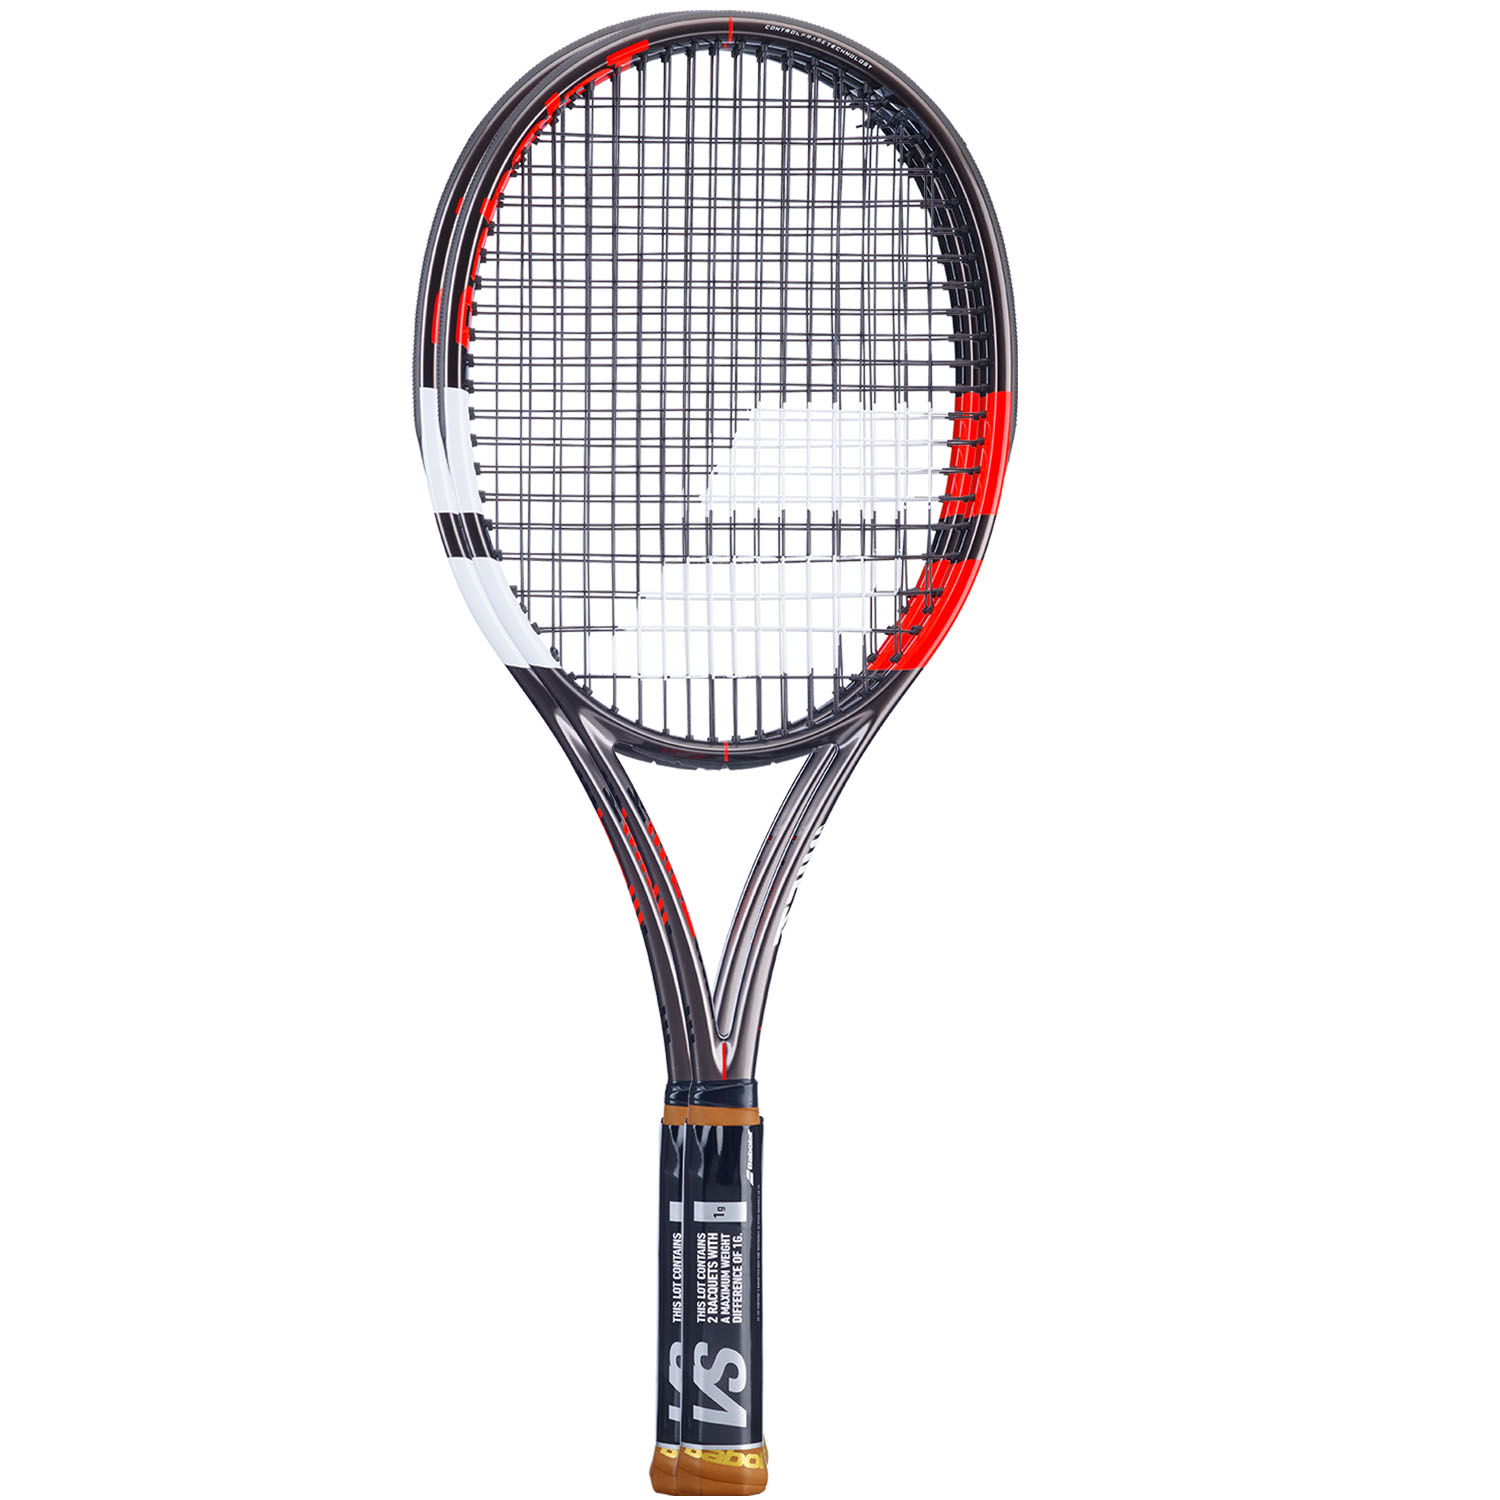 【いたします】 Babolat Pure Strike VS Tennis Racquet - Strung with 16g White Babolat Syn Gut at Mid